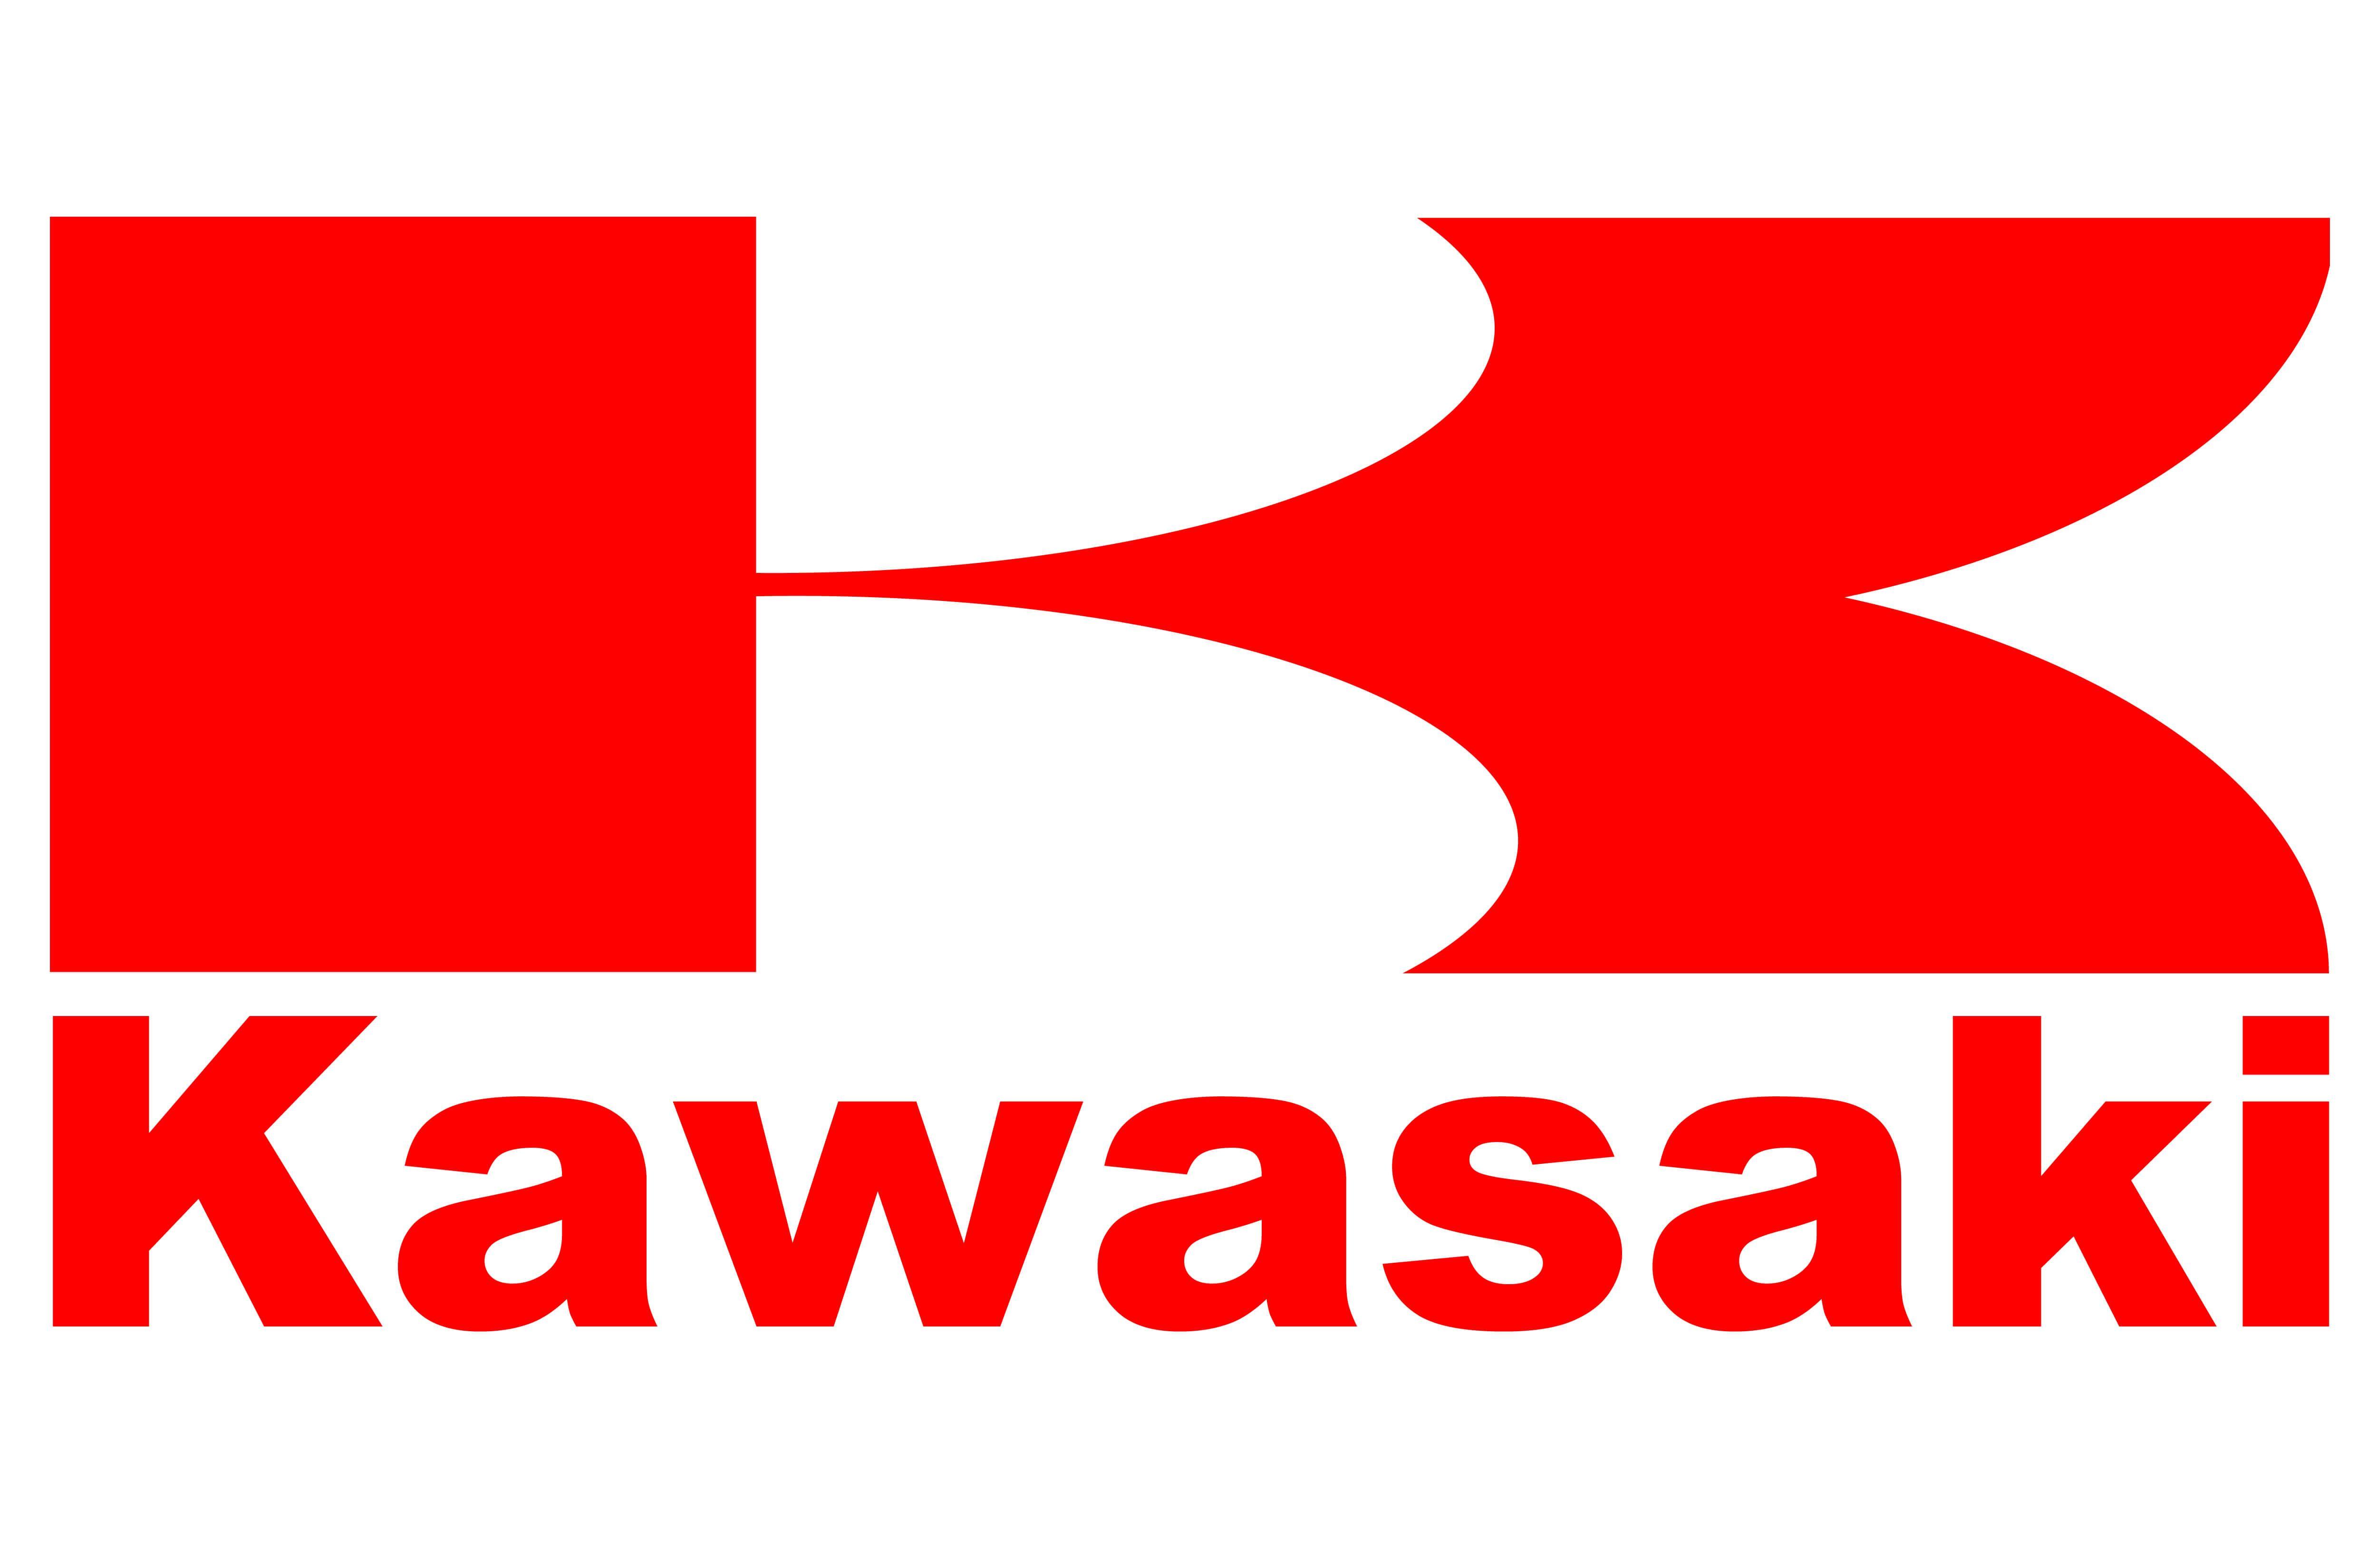 Kawasaki Motorcycle Logo - Kawasaki Motorcycle Logo | Motorcycle Signs | Motorcycle logo ...